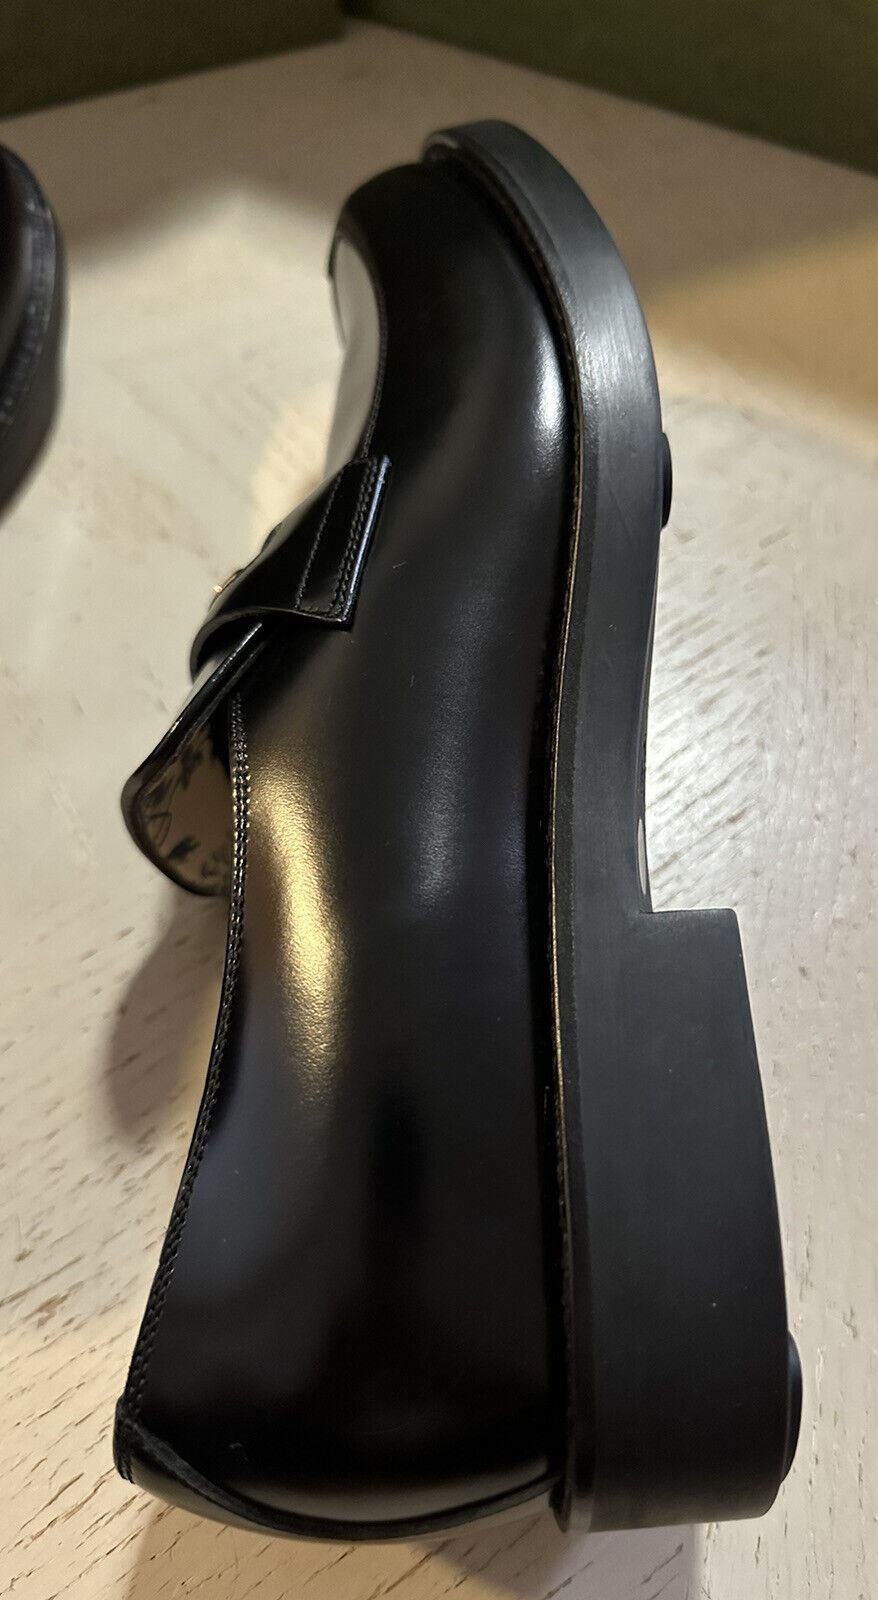 Мужские кожаные лоферы-мокасины Gucci за 1400 долларов США, черные 7 США (6 Gucci)